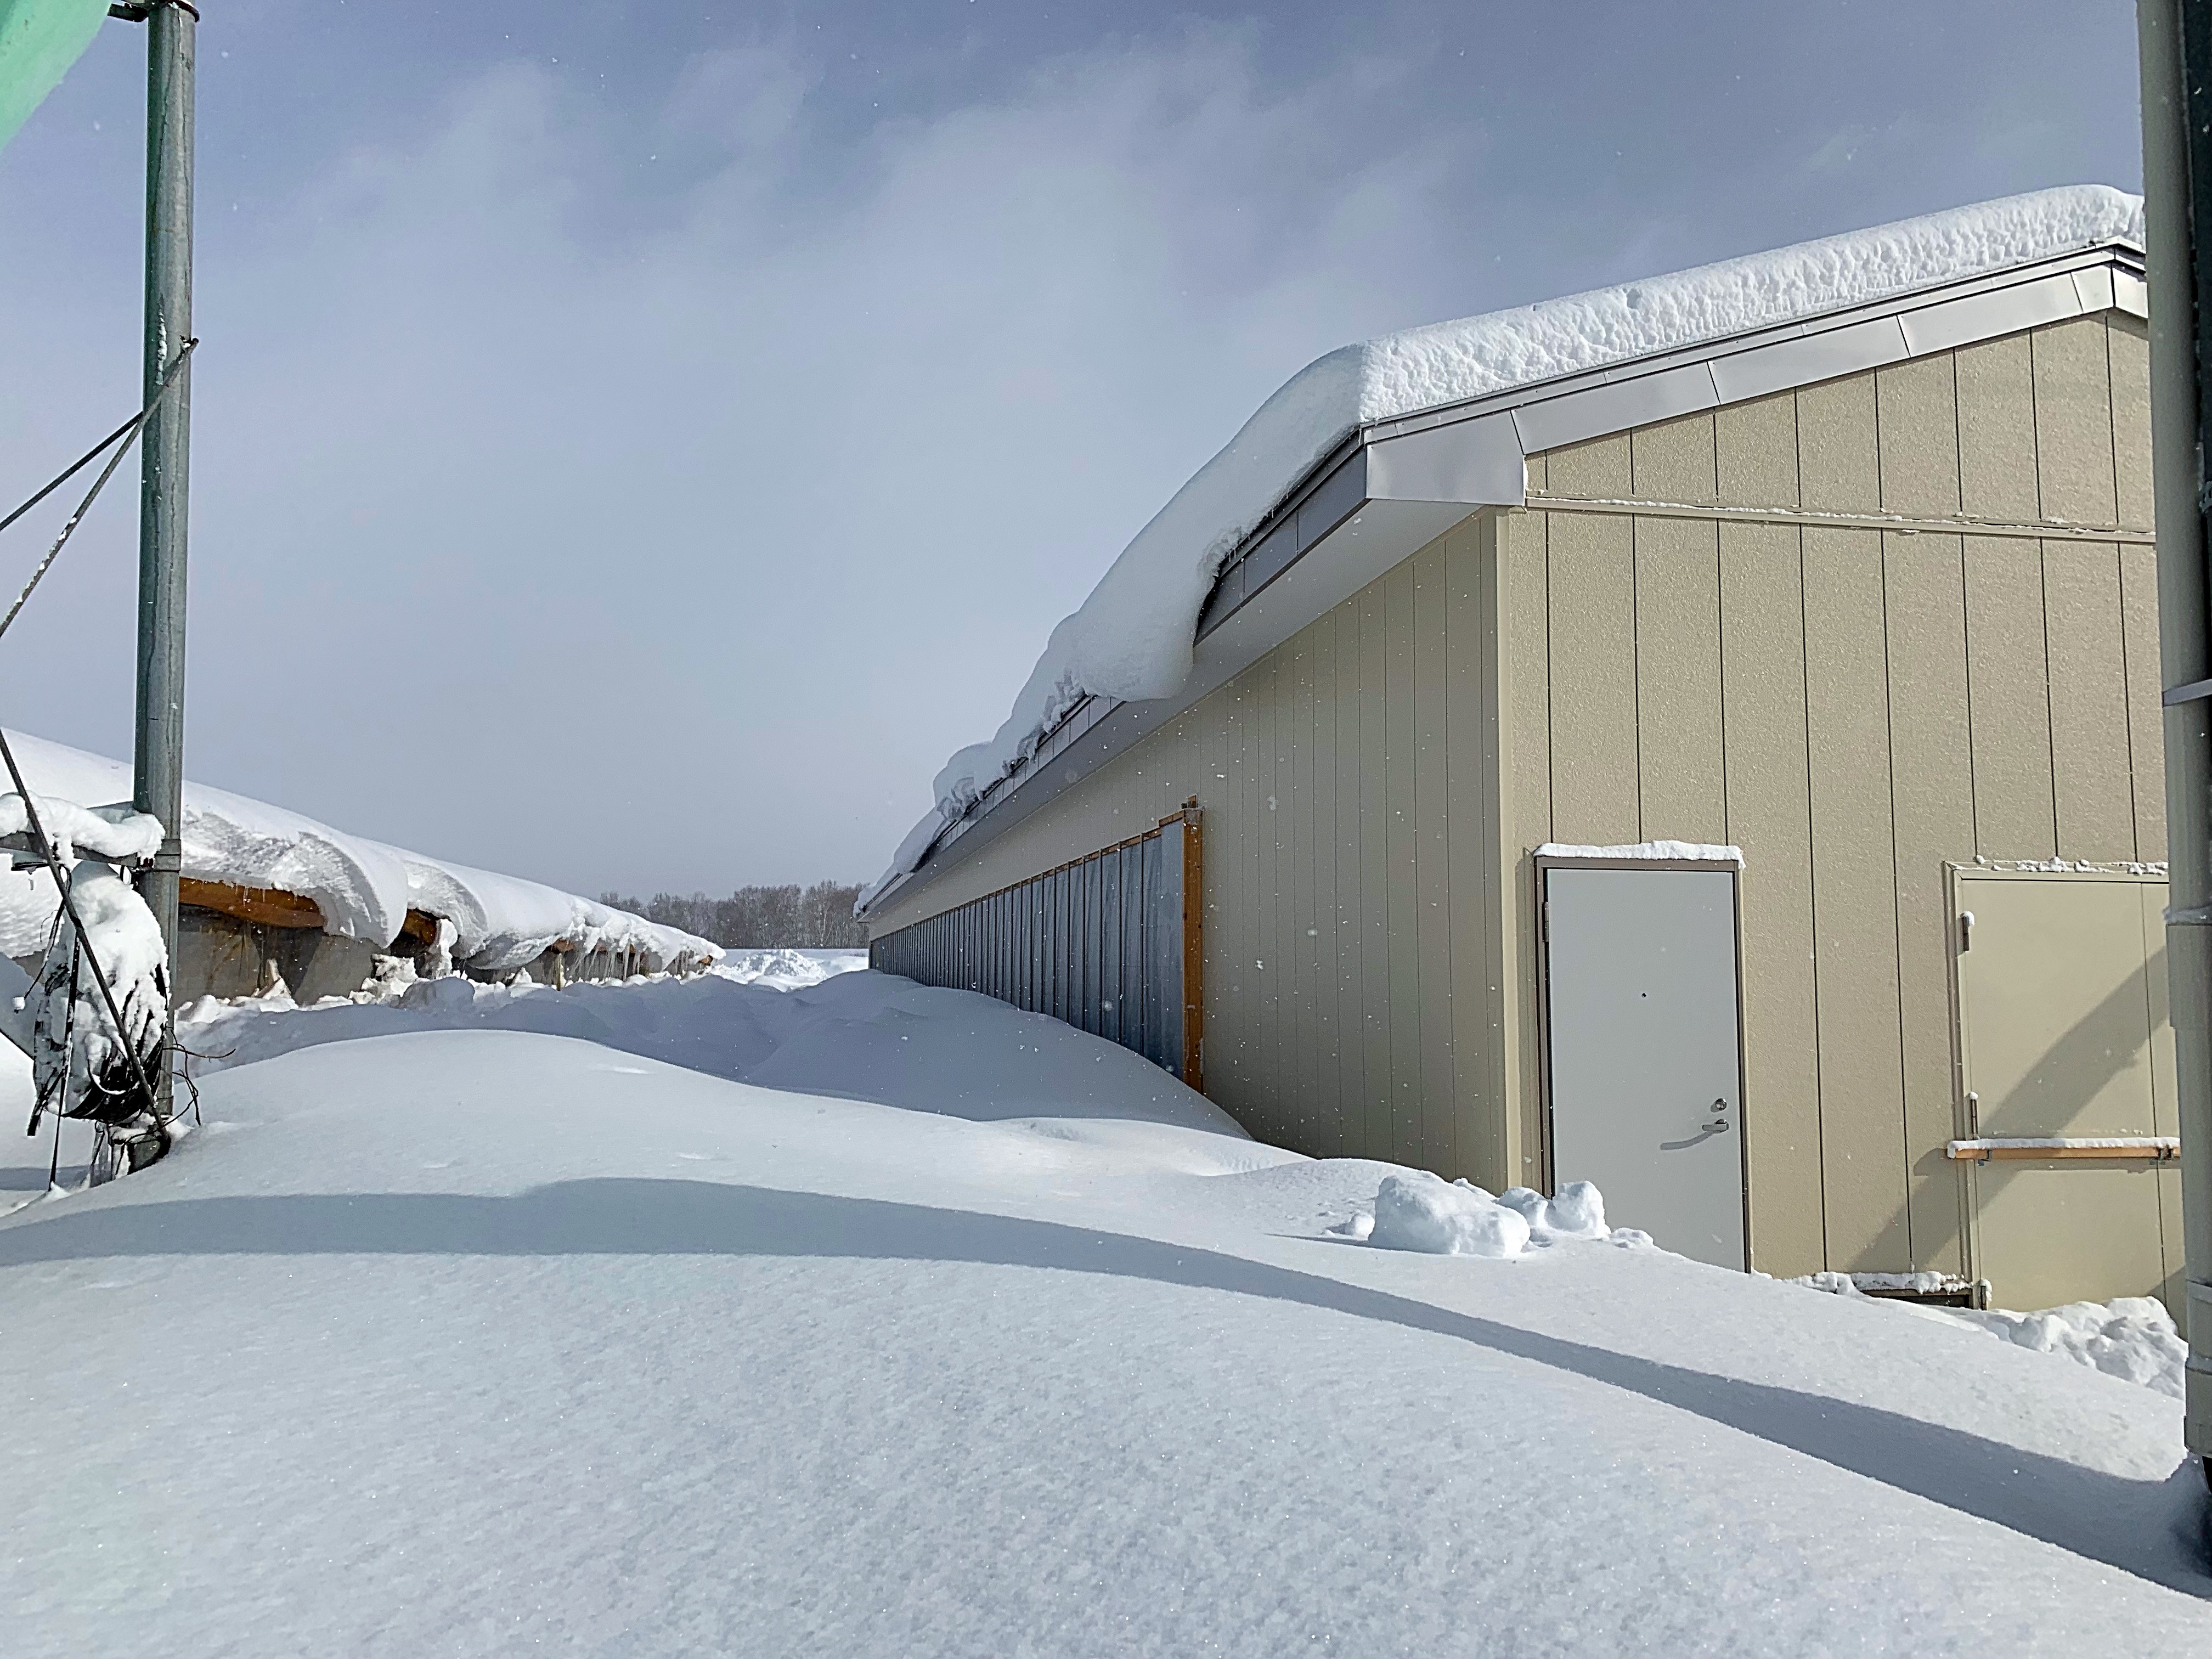 昨日の暴風雪により、降雪量が一気に多くなった。-大熊養鶏場の話|社長のブログ | 大熊養鶏場